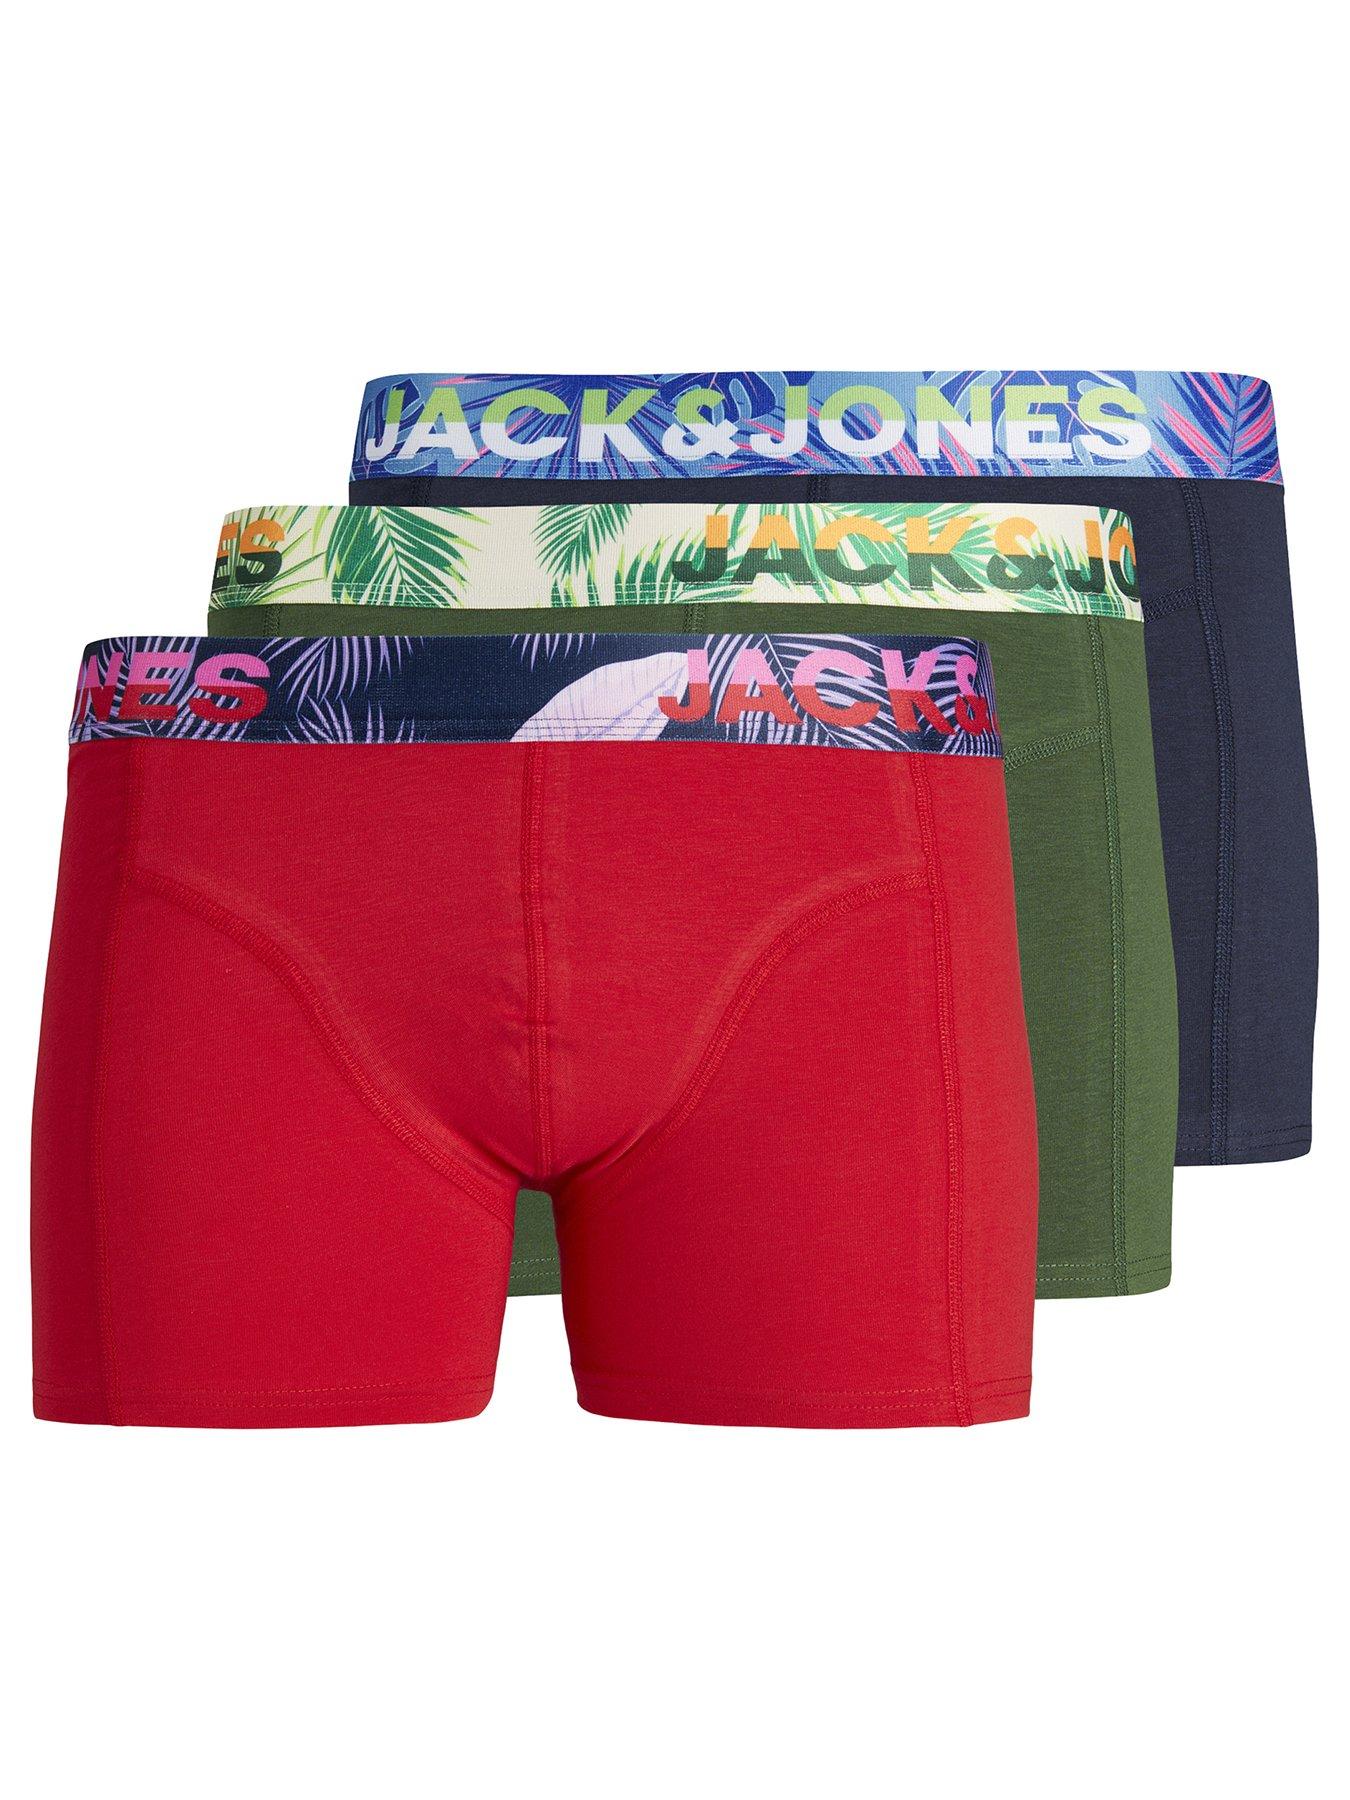 Jack & Jones Junior Boys Paw 3 Pack Trunks - Red/green/navy